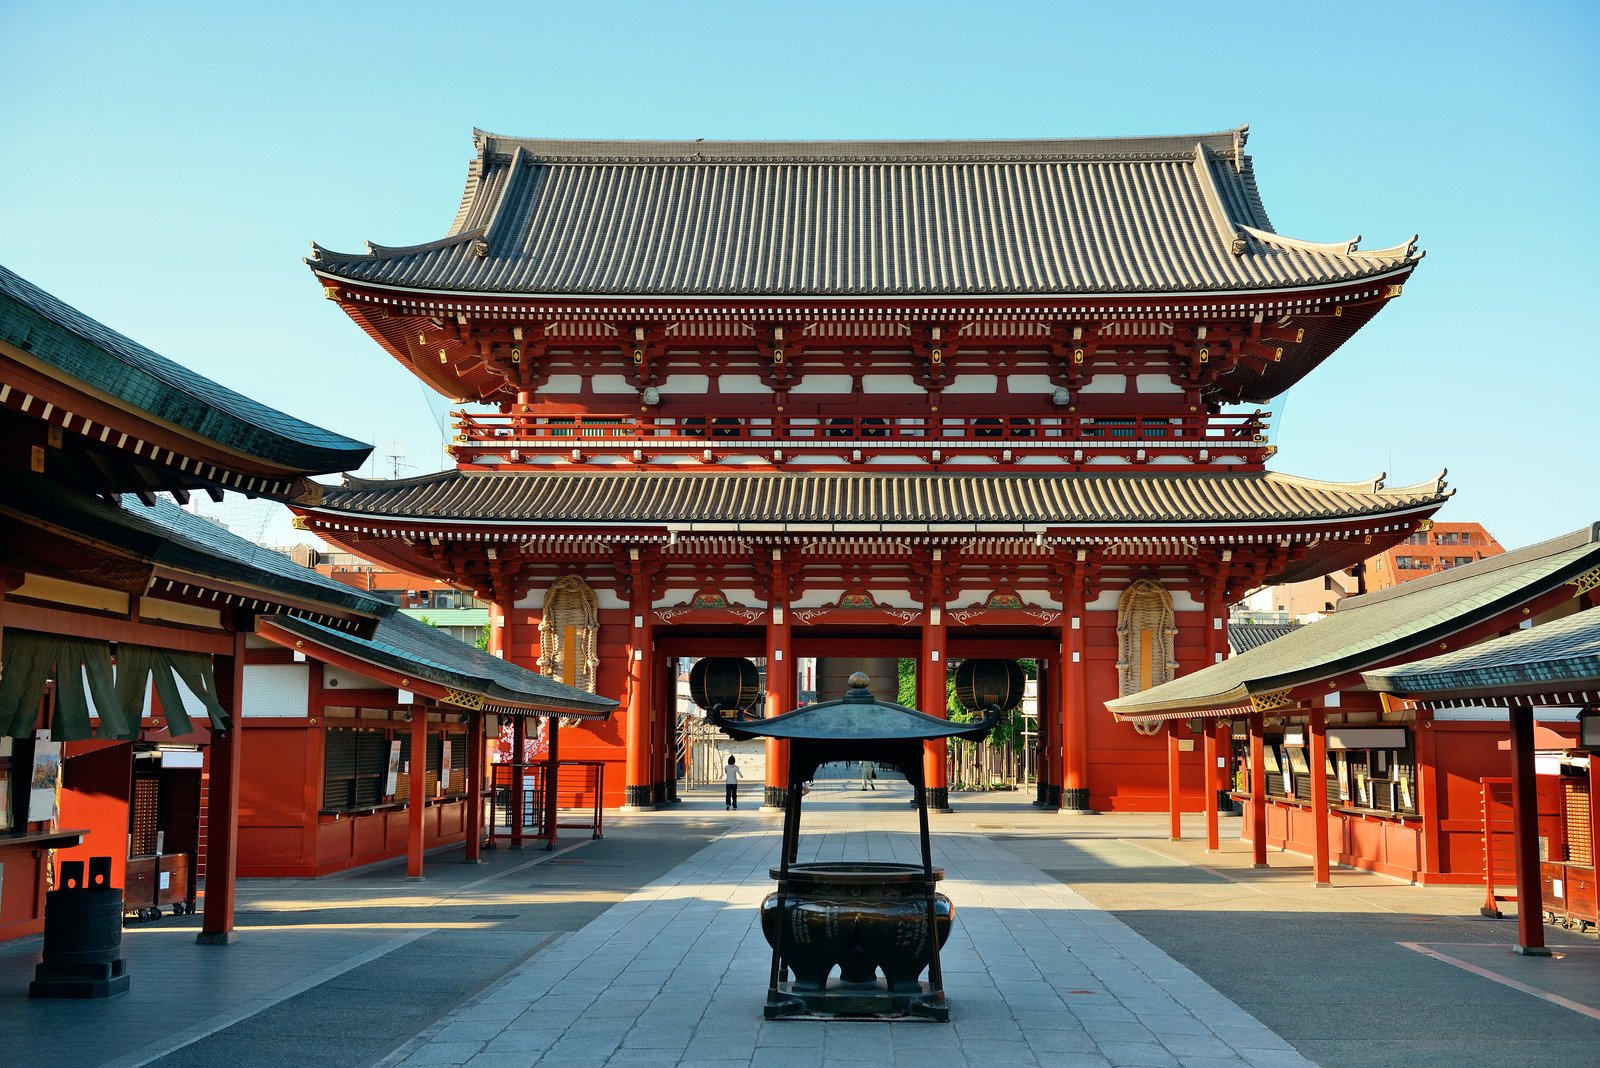 Thăm những ngôi đền, chùa là điều không nên bỏ lỡ khi đến Nhật Bản